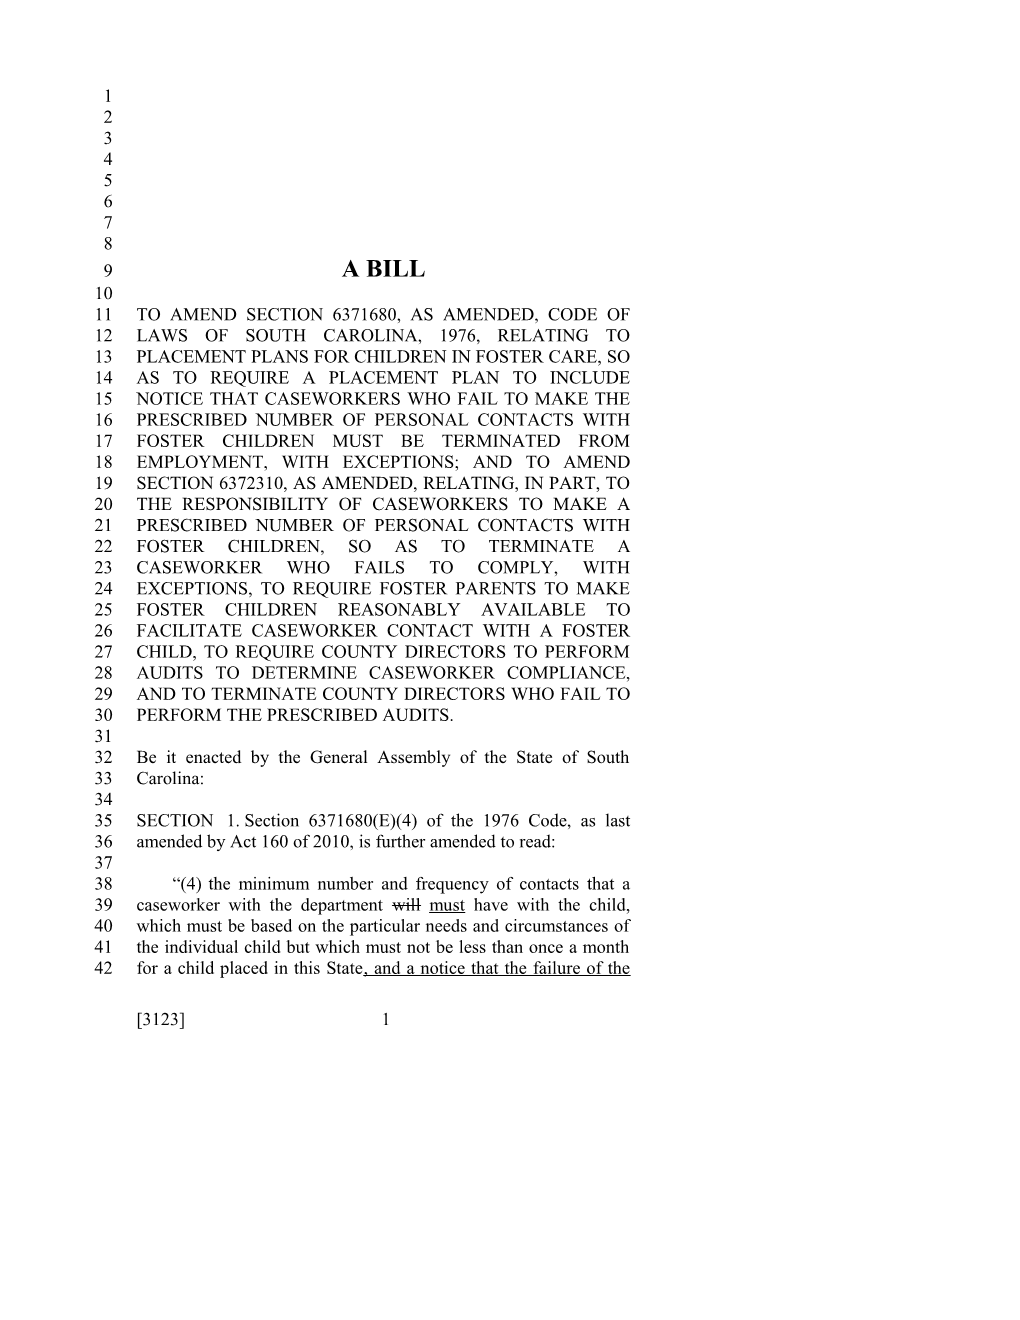 2017-2018 Bill 3123 Text of Previous Version (Dec. 15, 2016) - South Carolina Legislature Online